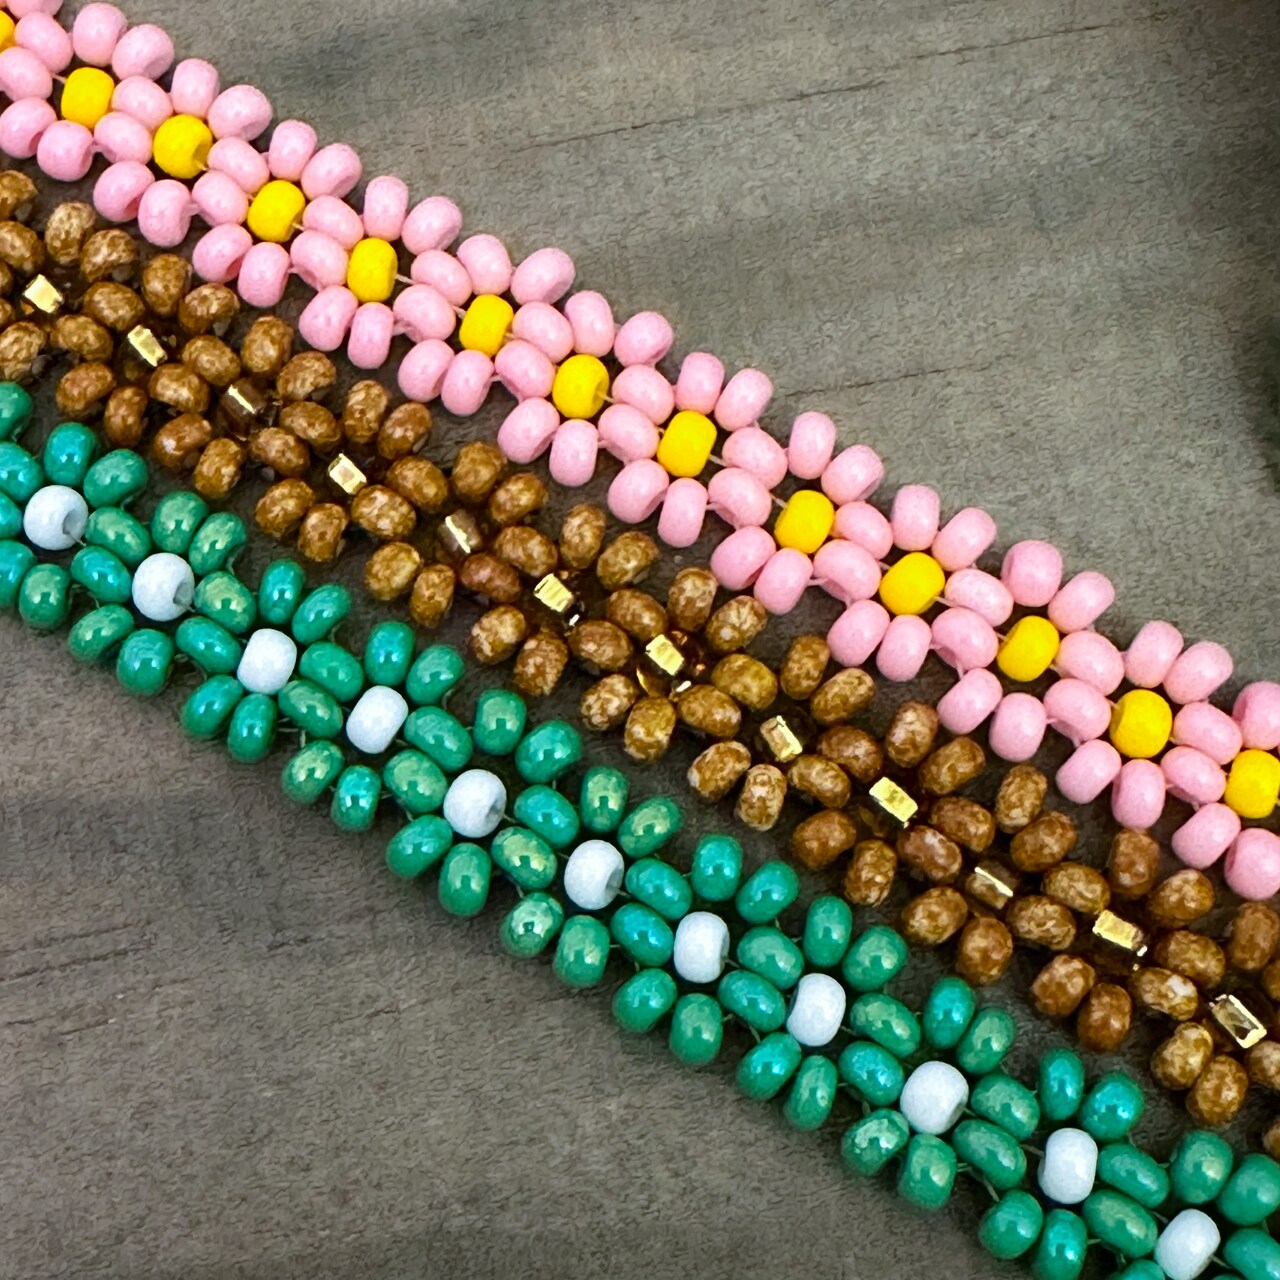 Daisy Chain Bracelets with @daniellewickesjewelry